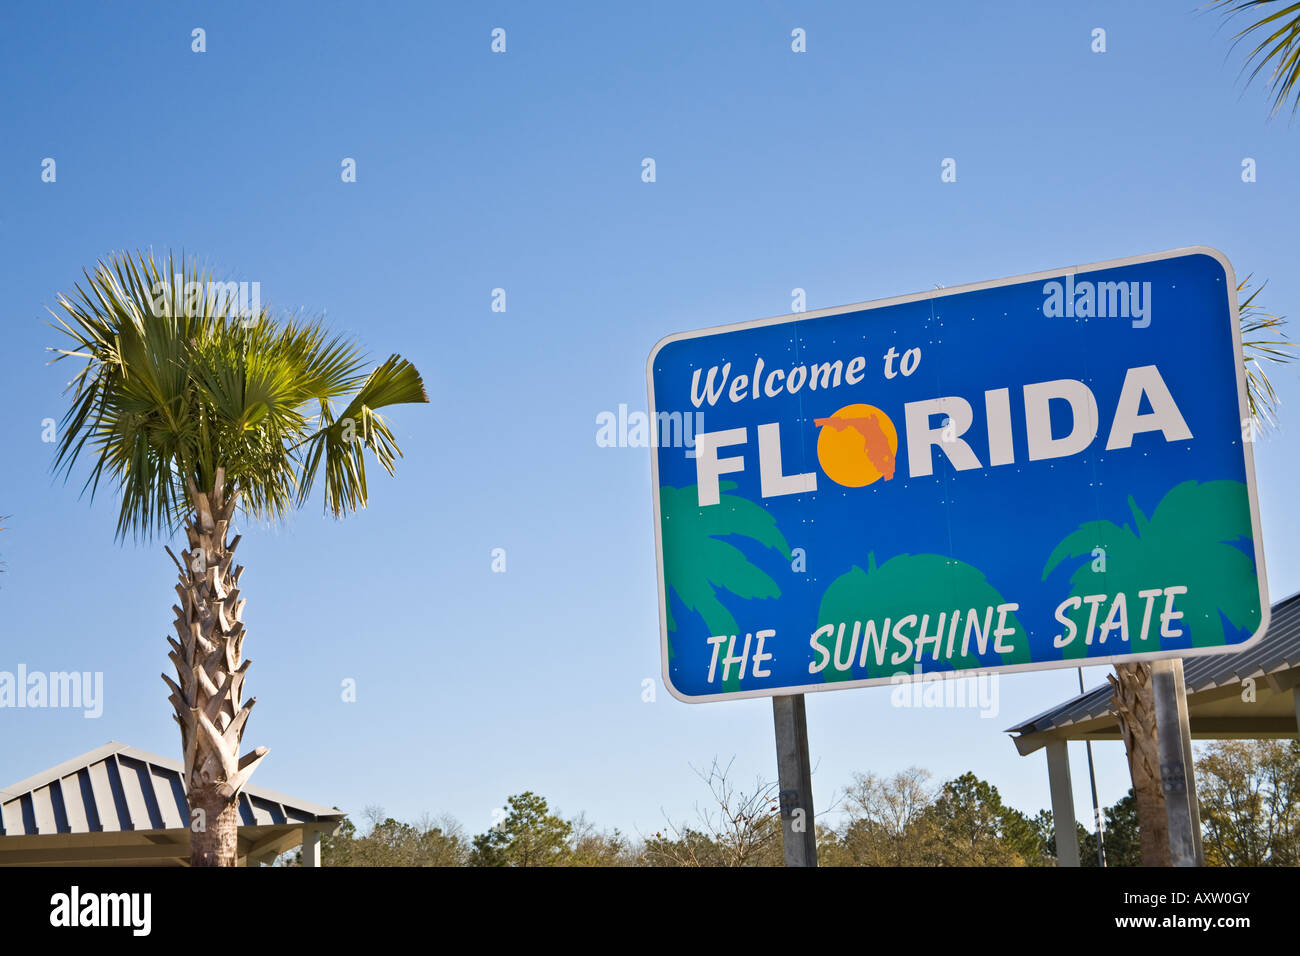 Les deux 'Welcome to Florida' signe au Florida Centre Bienvenue sur J95 à la frontière de la Géorgie. Banque D'Images